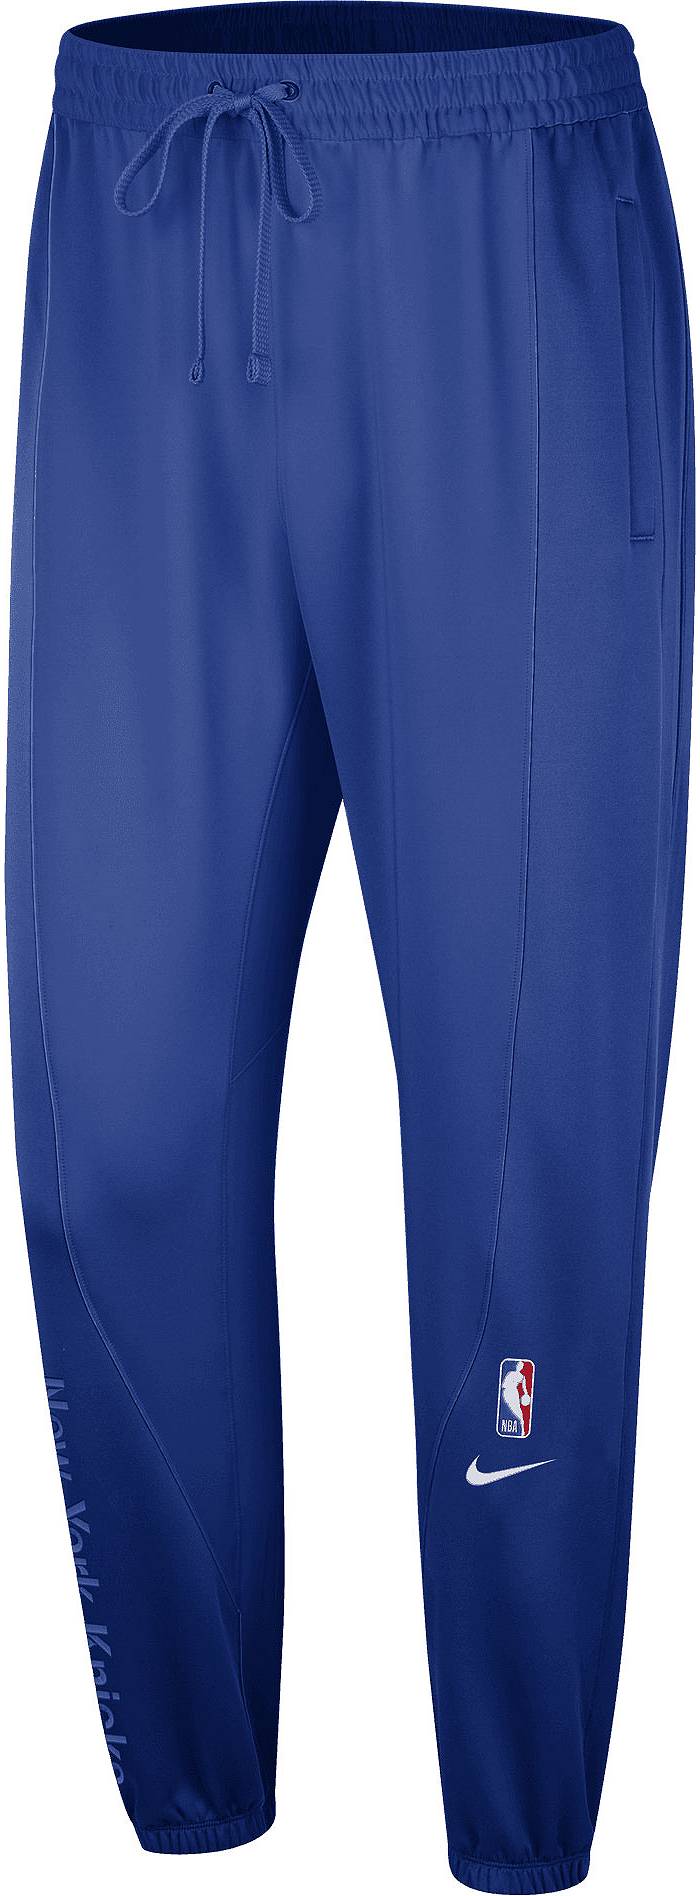 Nike Men's New York Knicks Blue Showtime Pants, Large